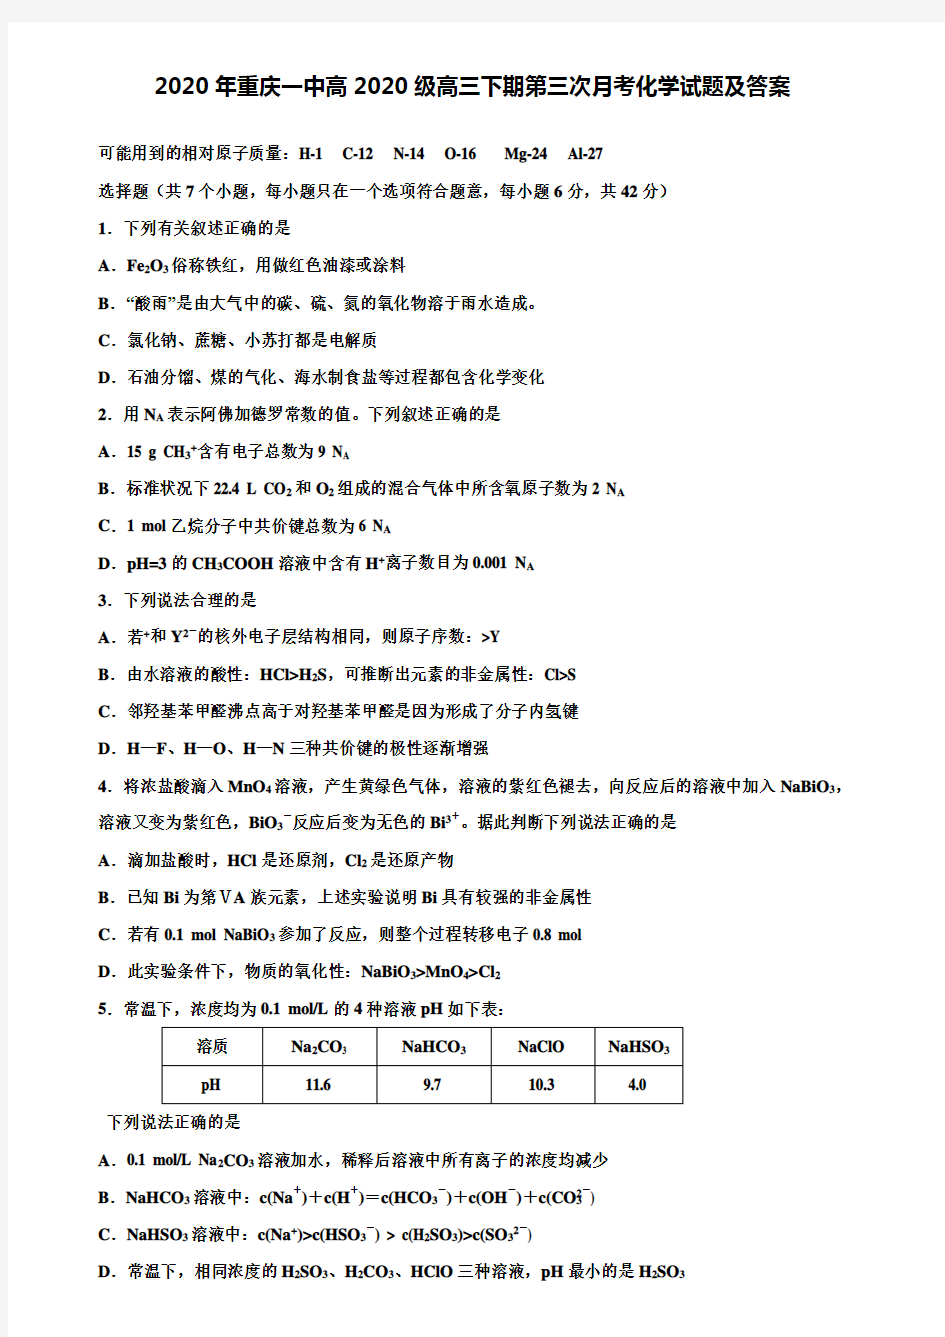 【附加36套精选模拟试题】2020年重庆一中高2020级高三下期第三次月考化学试题及答案